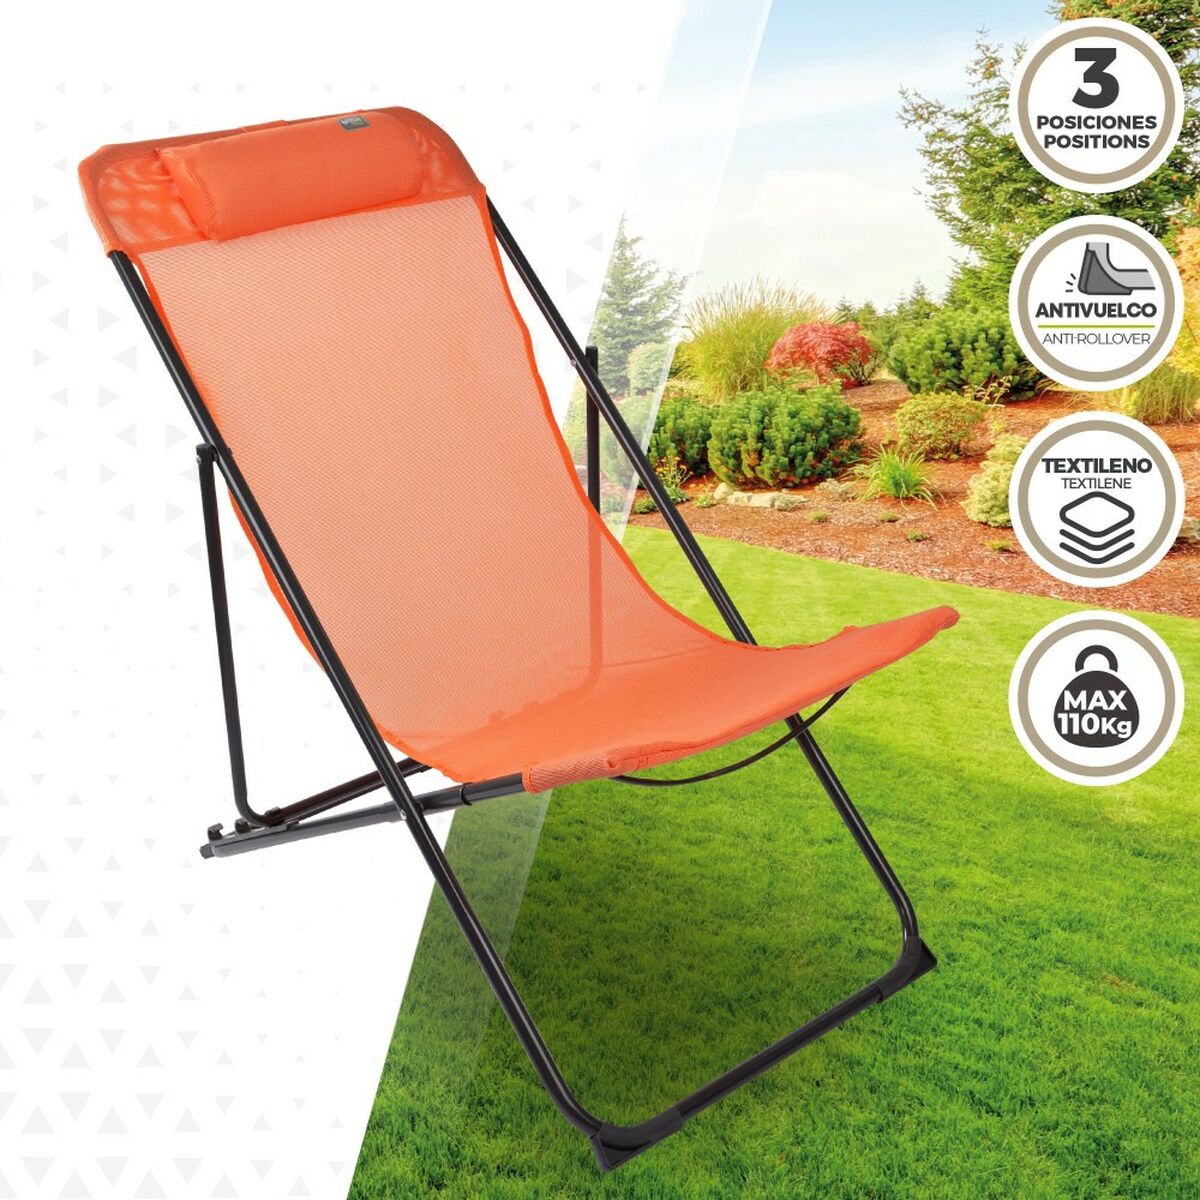 Saliekams krēsls Aktive Oranžs 52 x 87 x 77 cm (4 gb.)